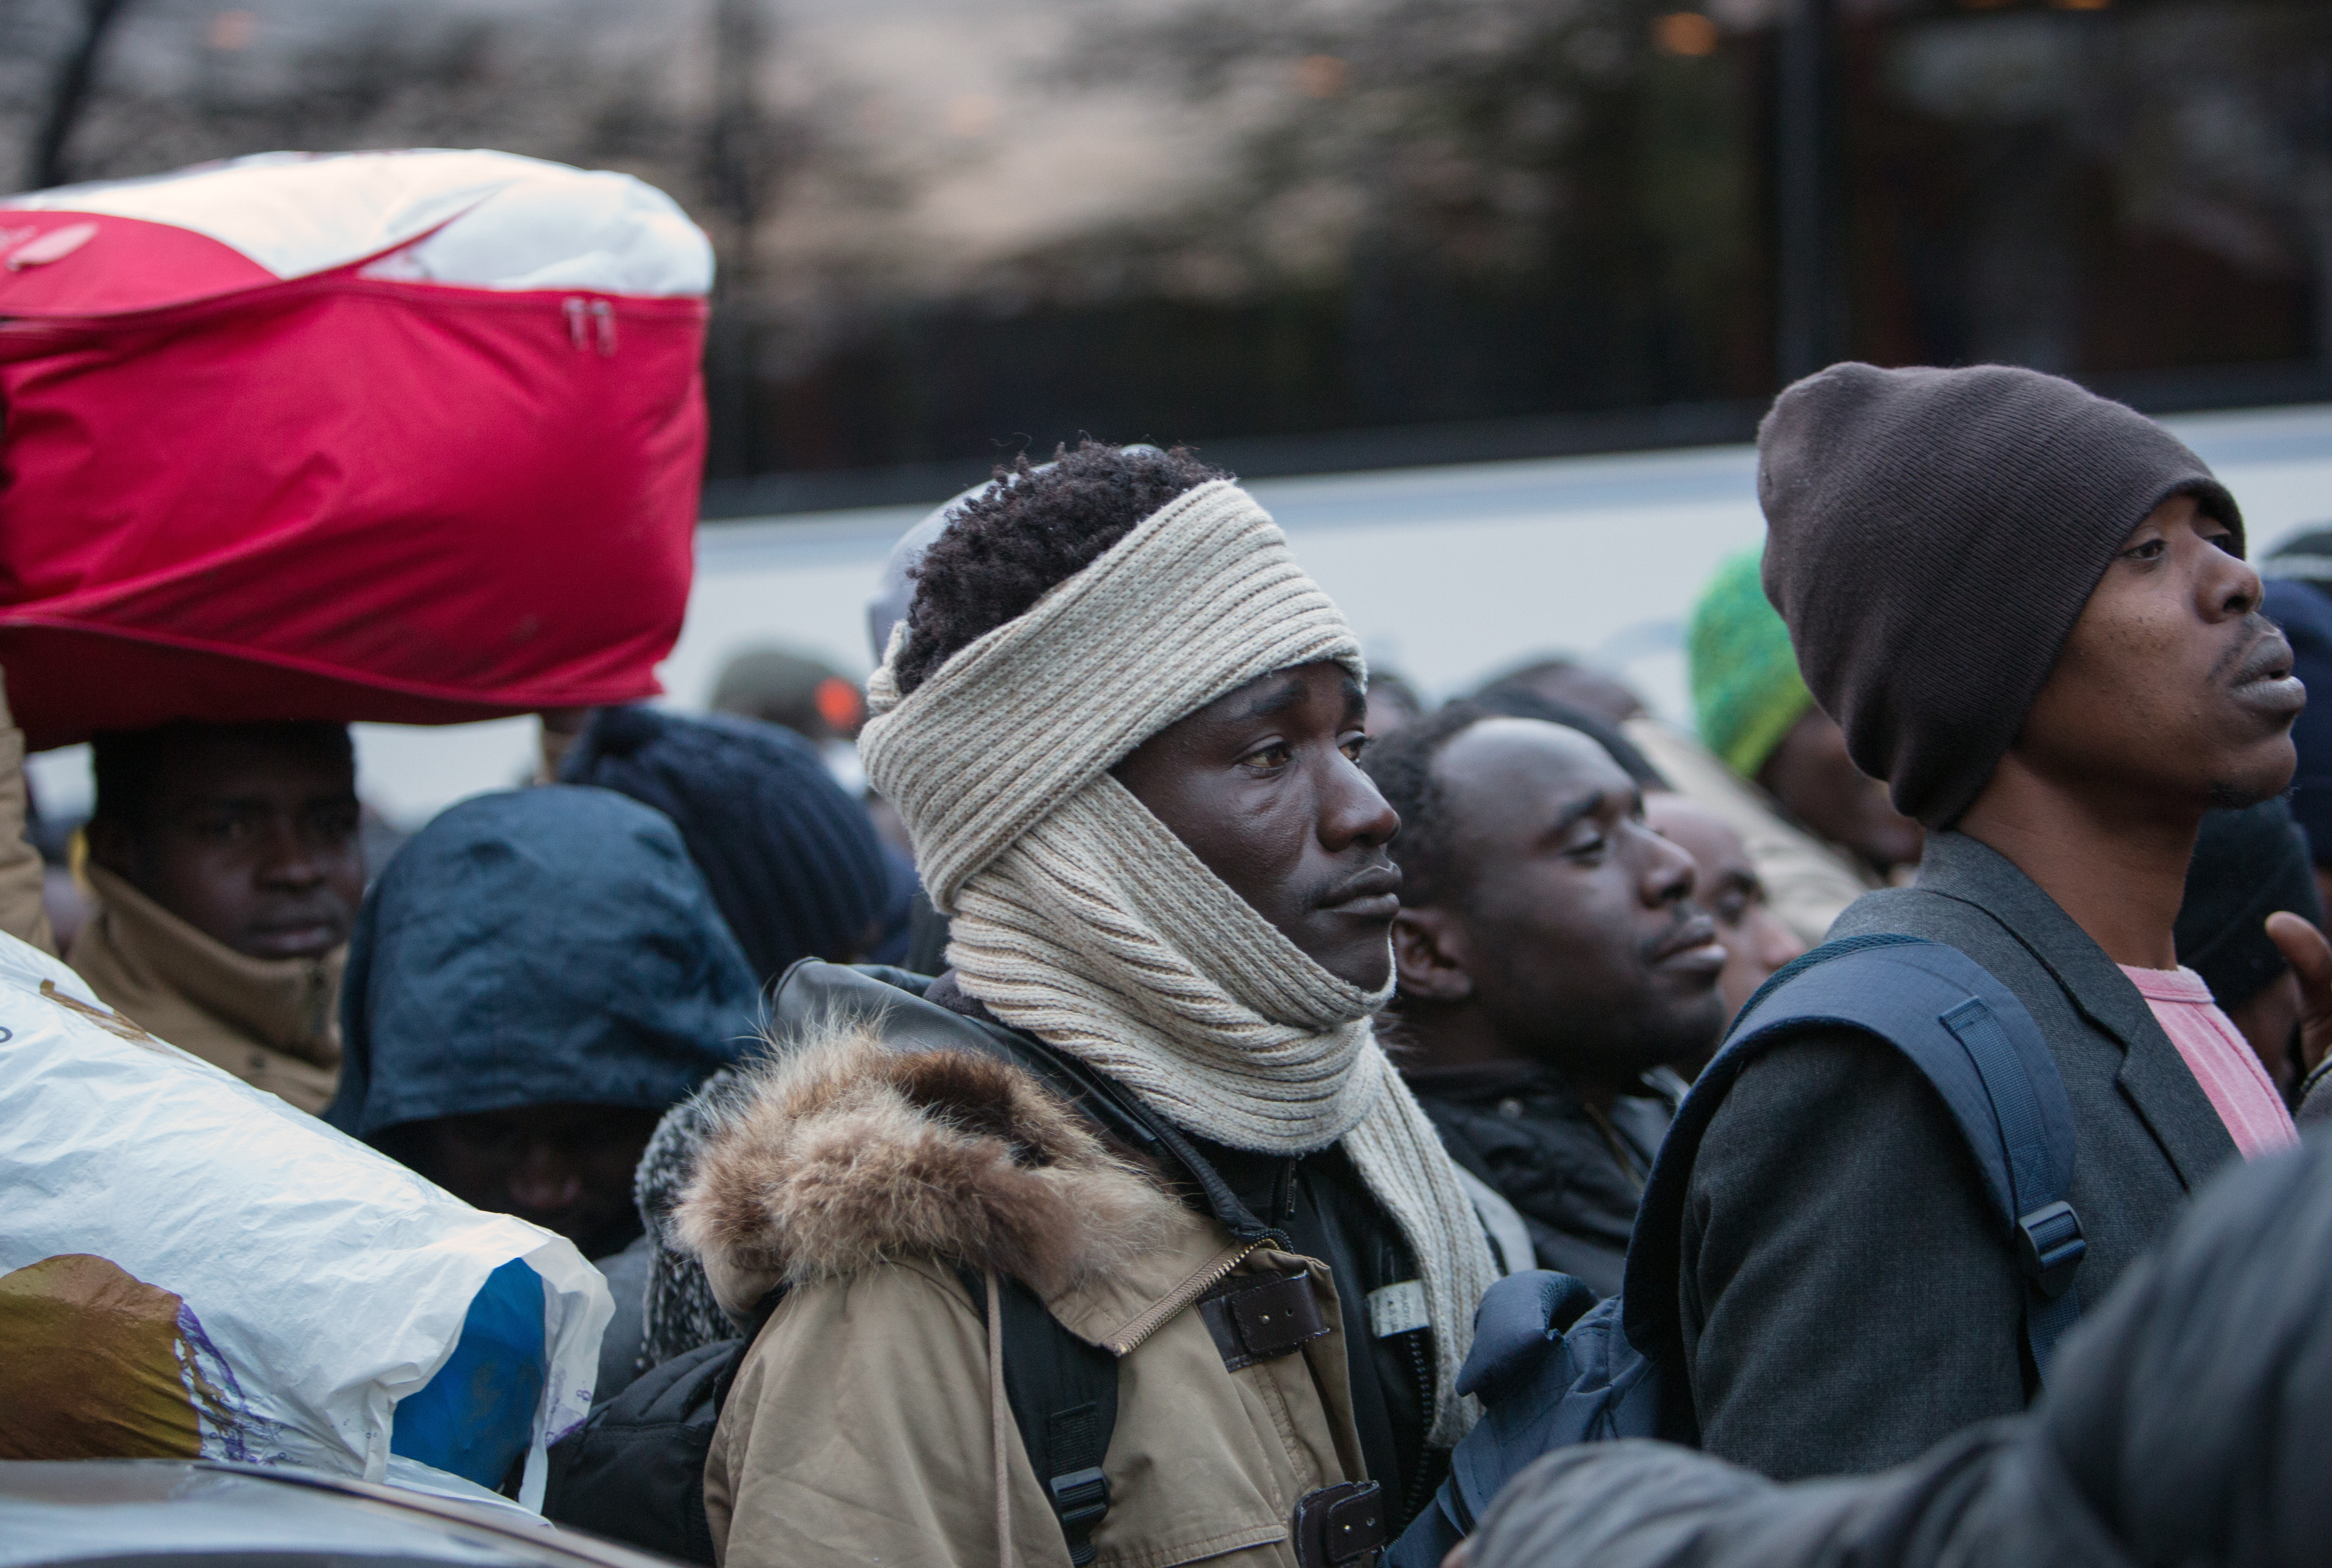 Стихийный лагерь мигрантов в Париже.
Фото: &copy; РИА Новости/Ирина Калашникова